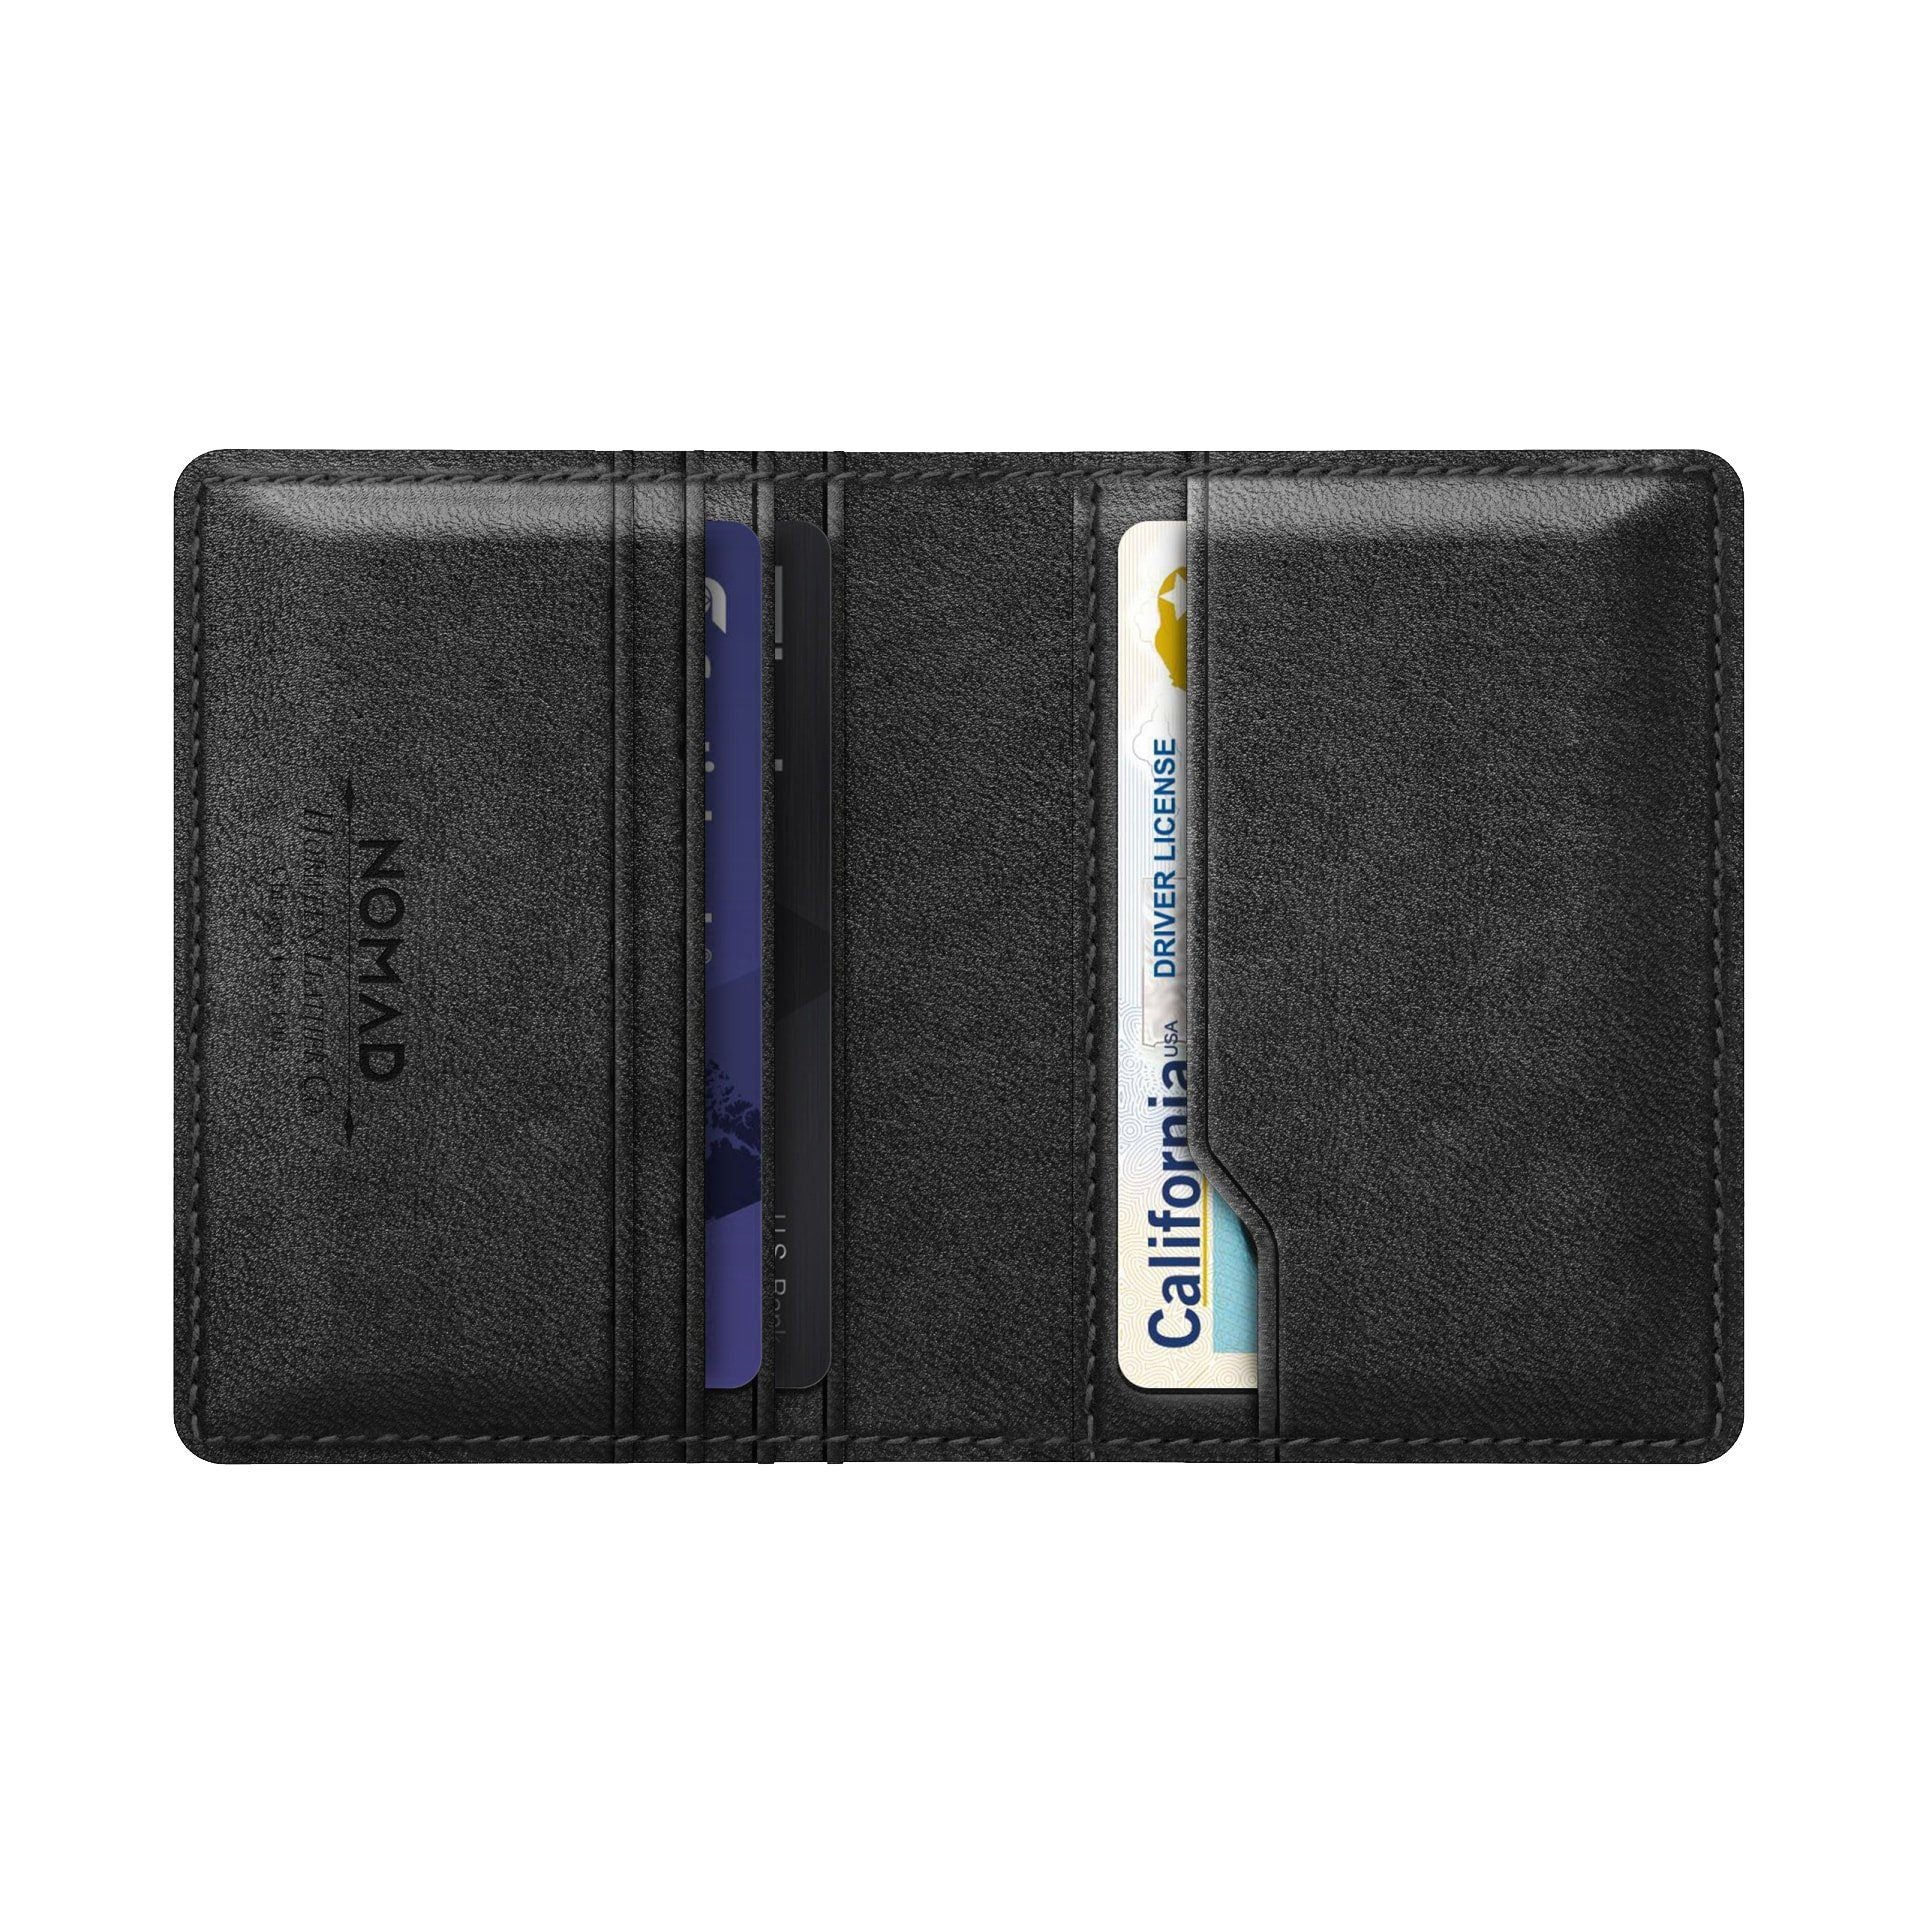 NOMAD Slim Horween Leather Wallet with Tile Tracking, Black Wallet NOMAD 